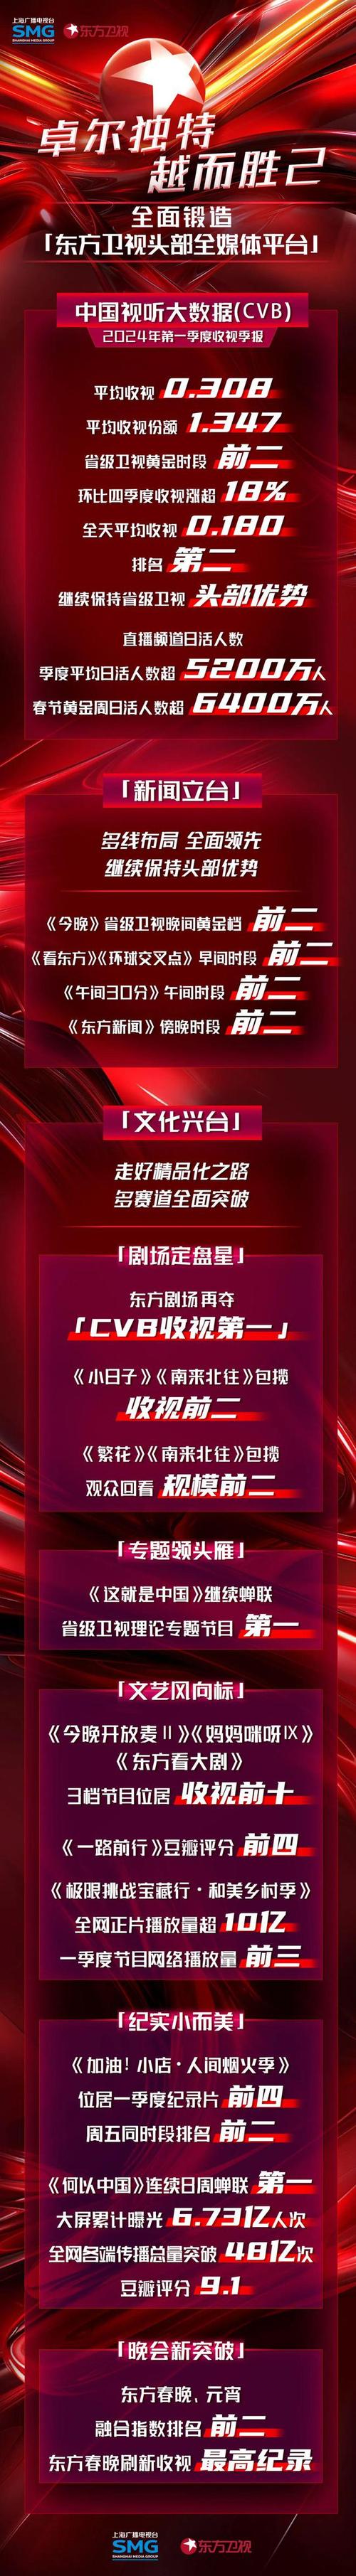 上海东方卫视直播在线观看节目表